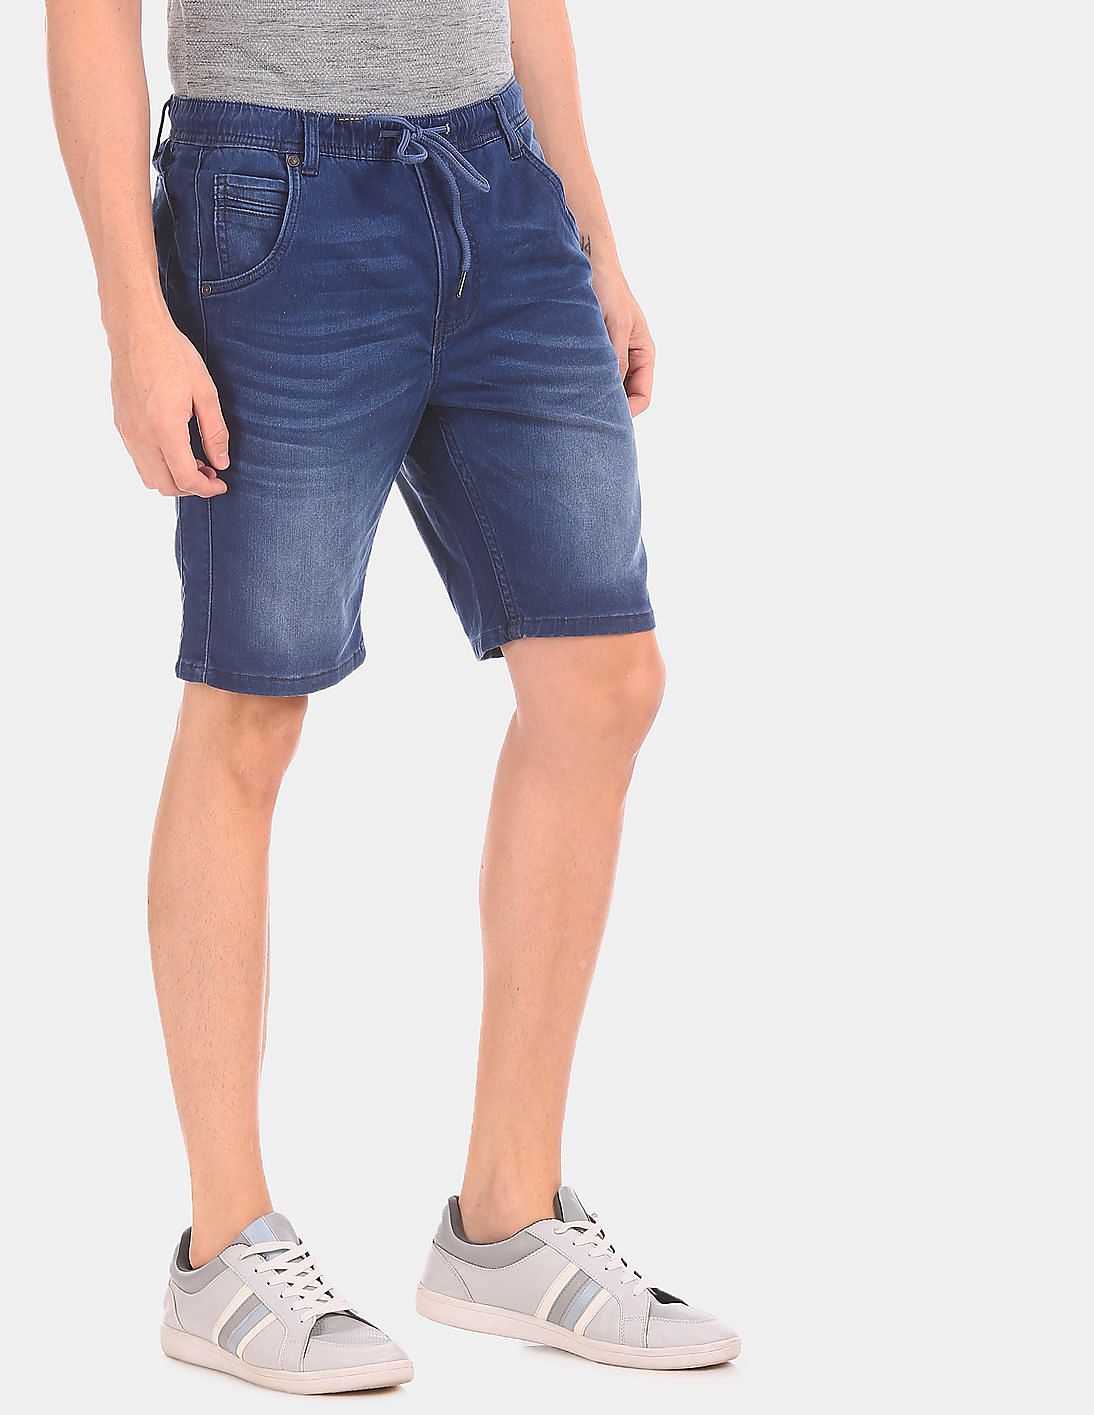 drawstring jean shorts mens